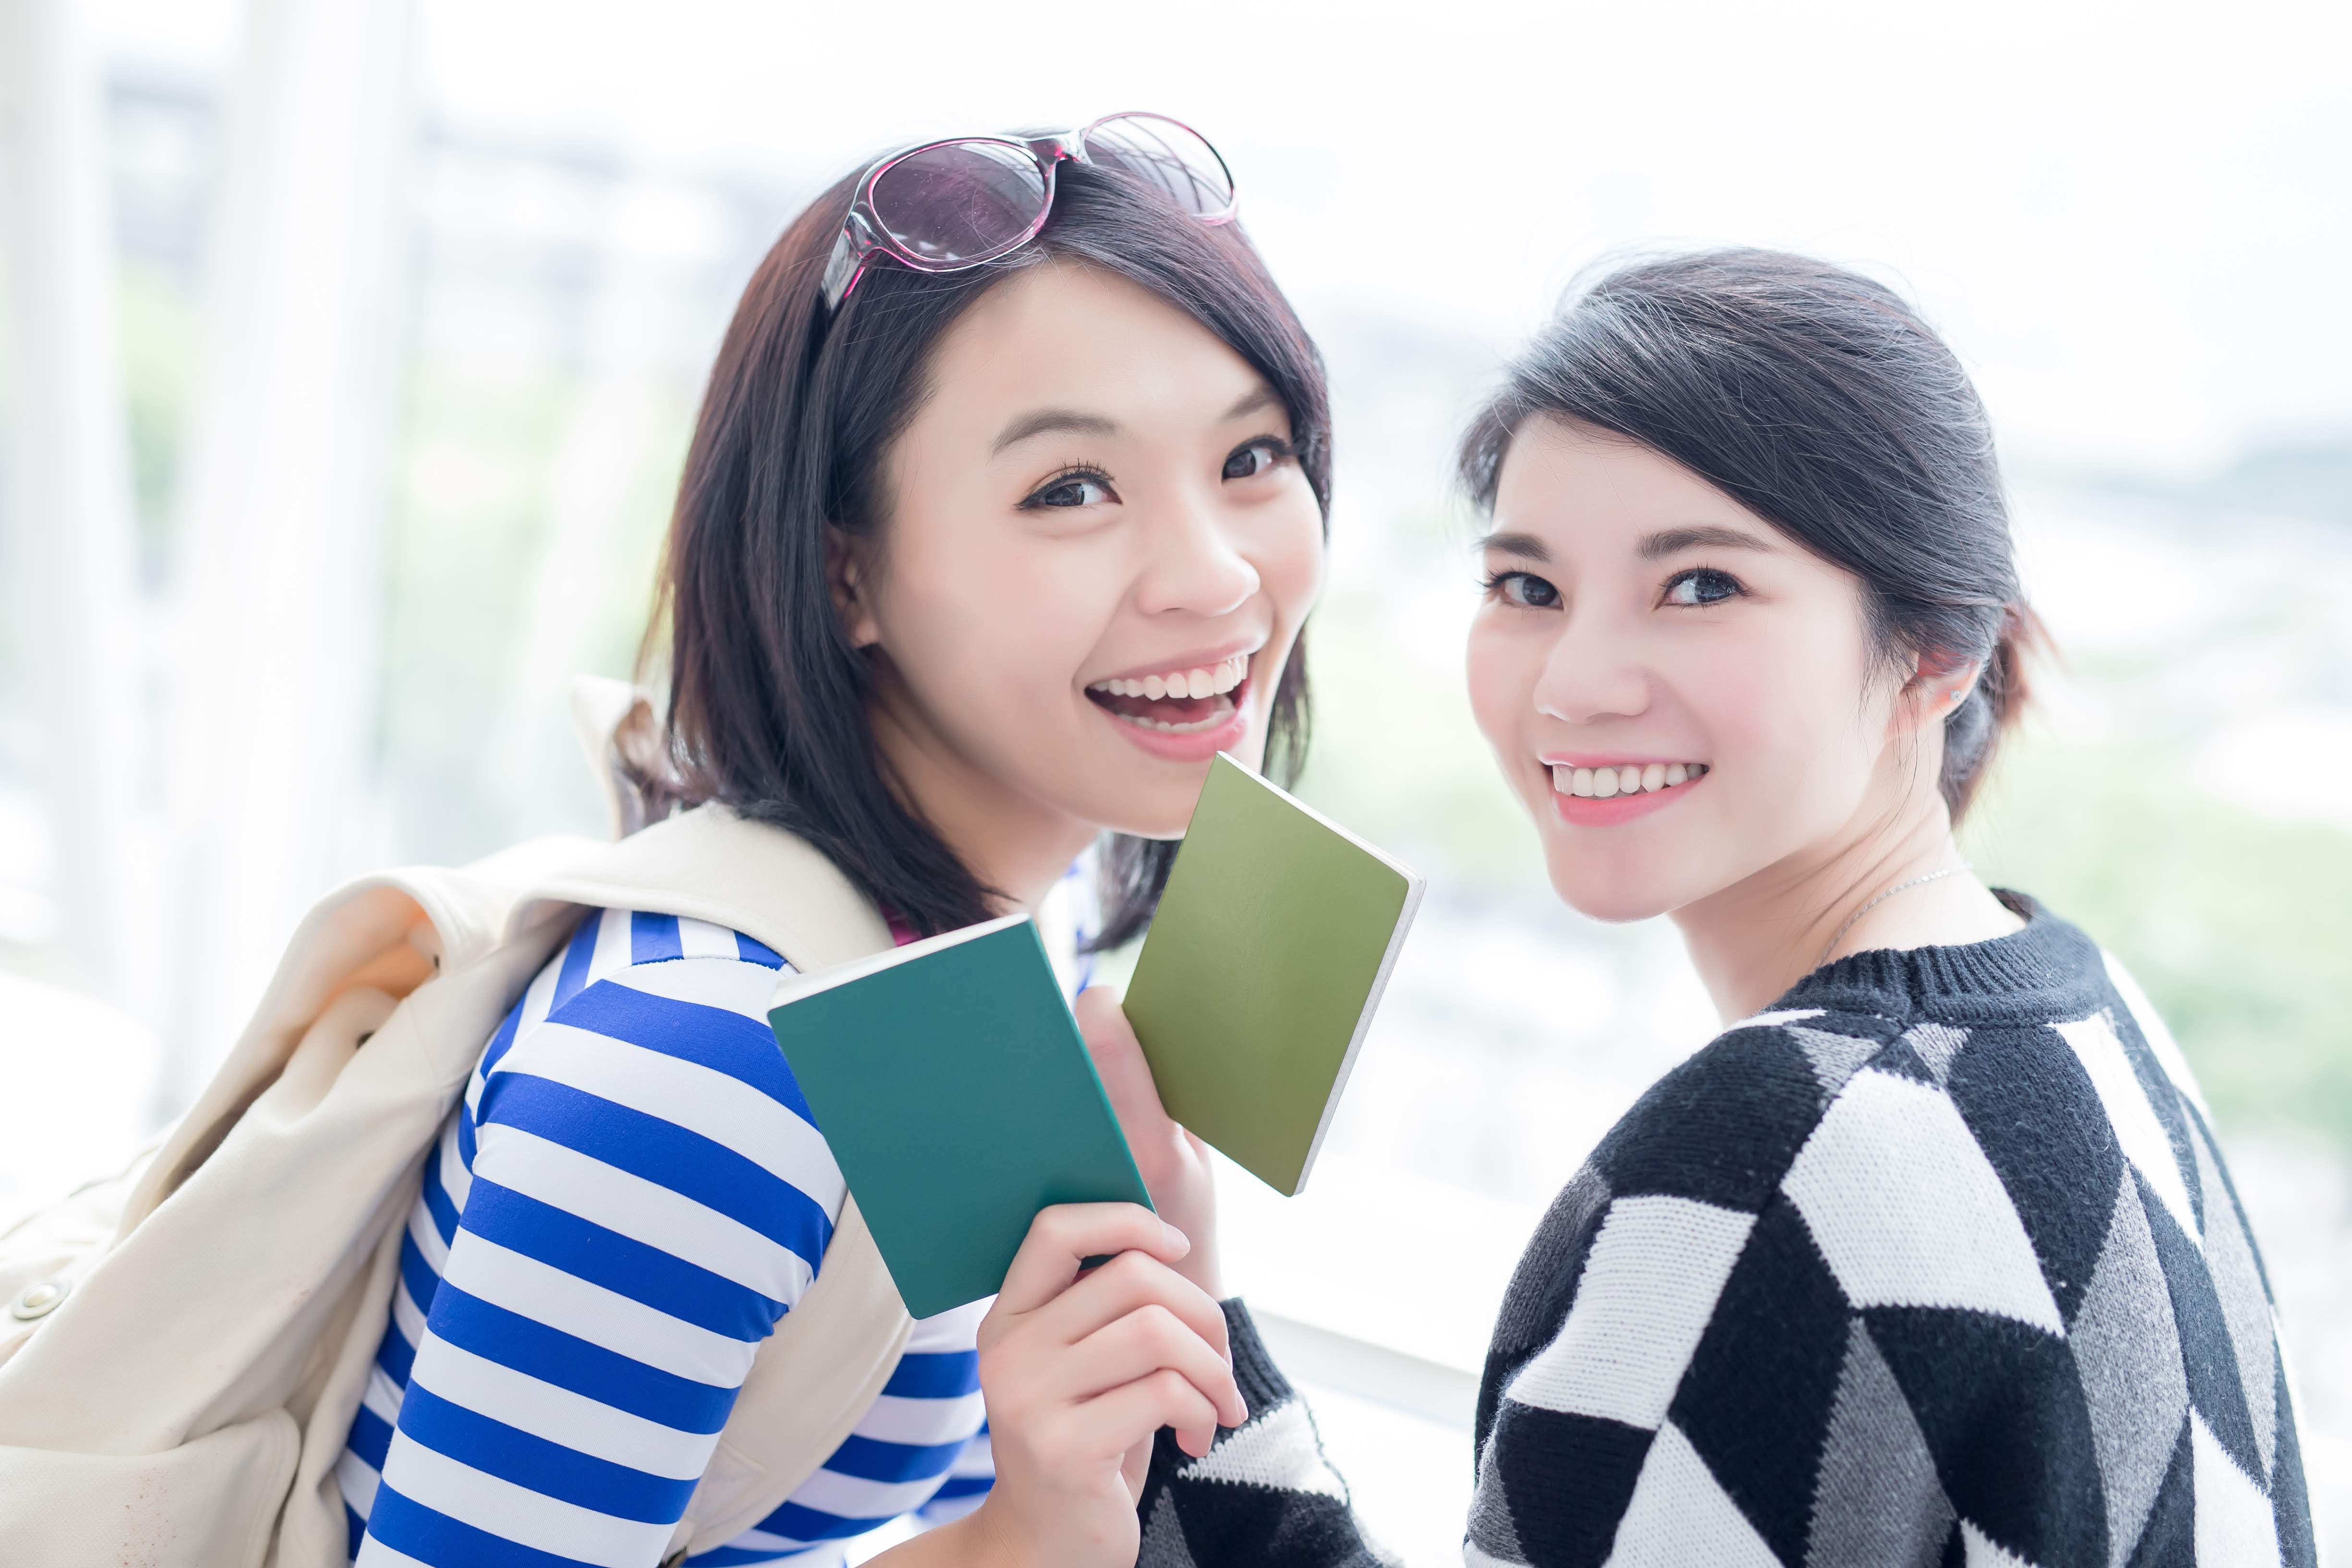 越南從2022年3月15日起取消對澳門遊客的旅行限制 | 越南為澳門護照持有人恢復旅遊簽證 2022